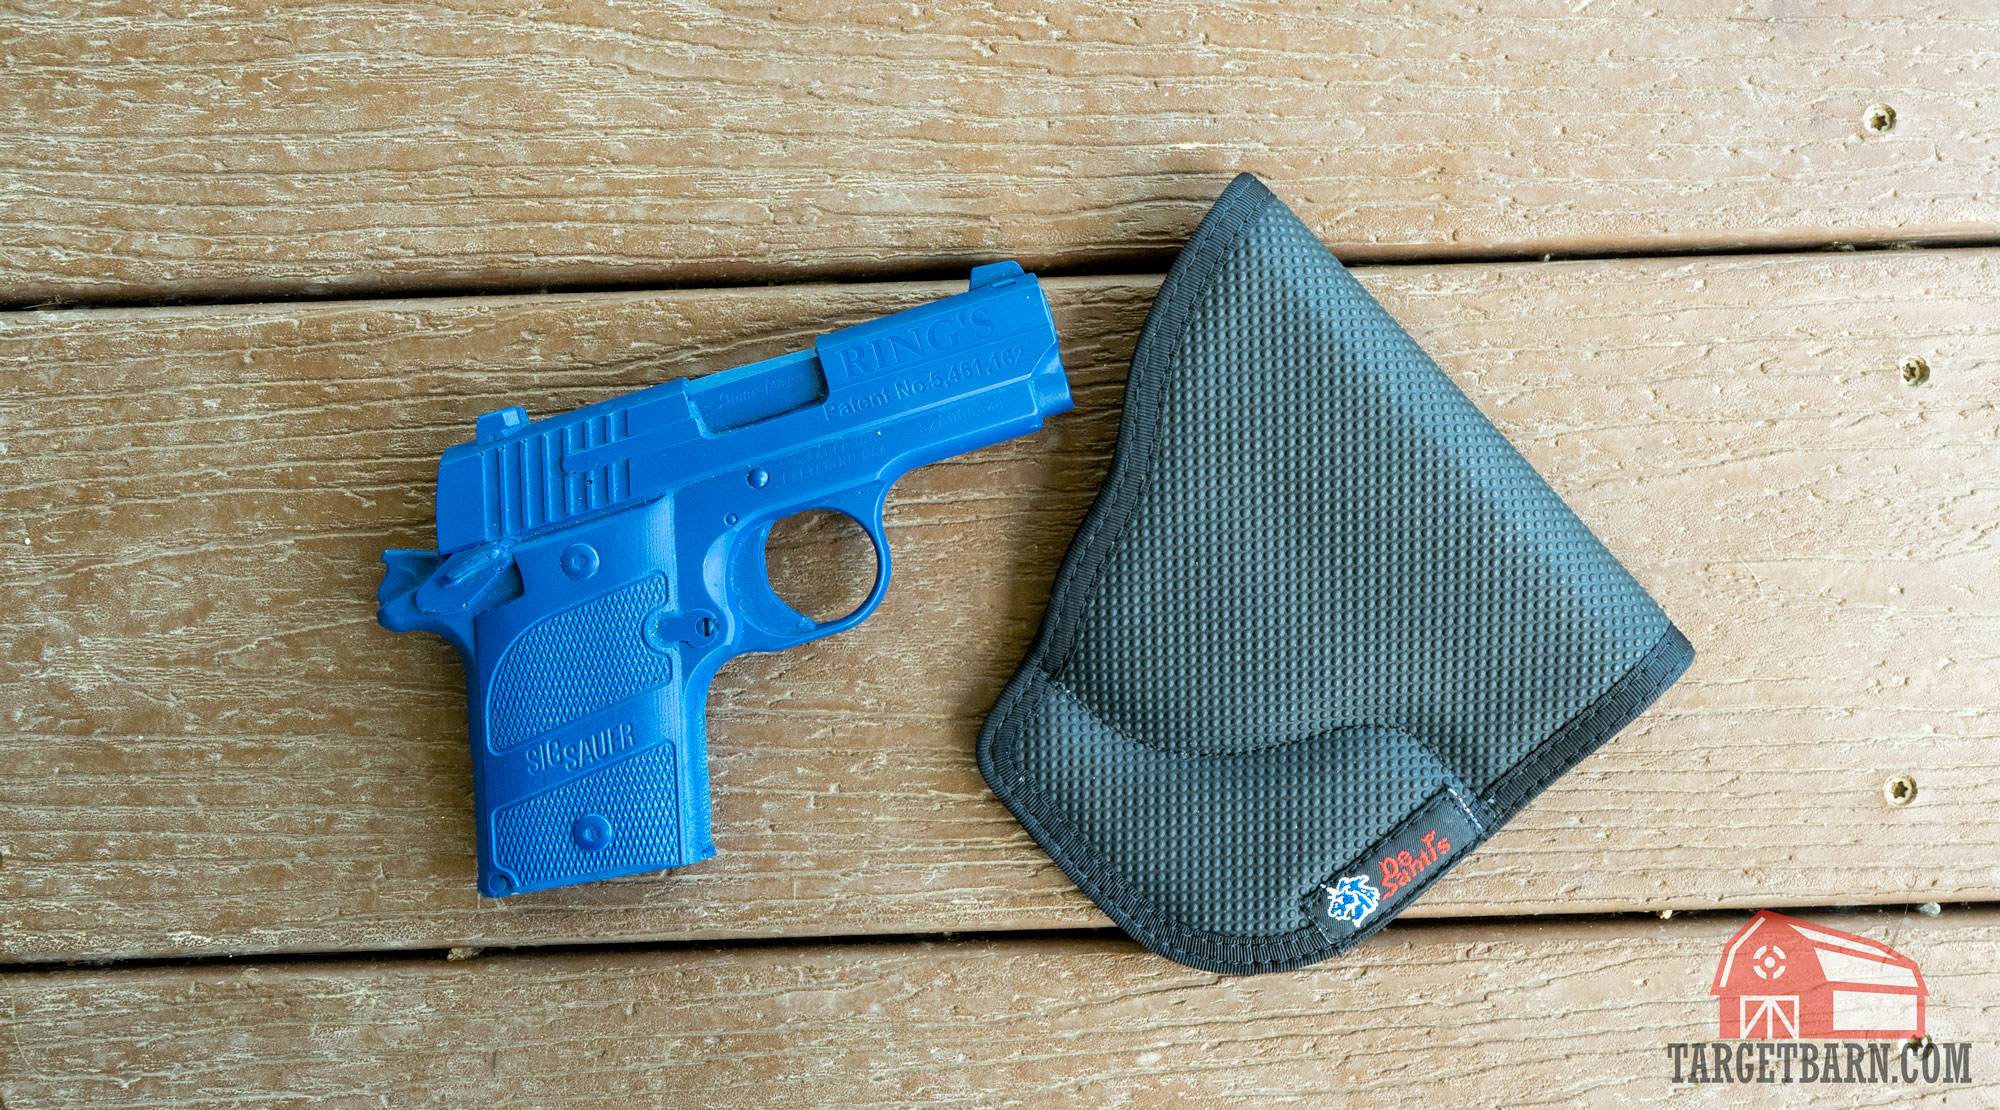 a blue gun next to a pocket holster